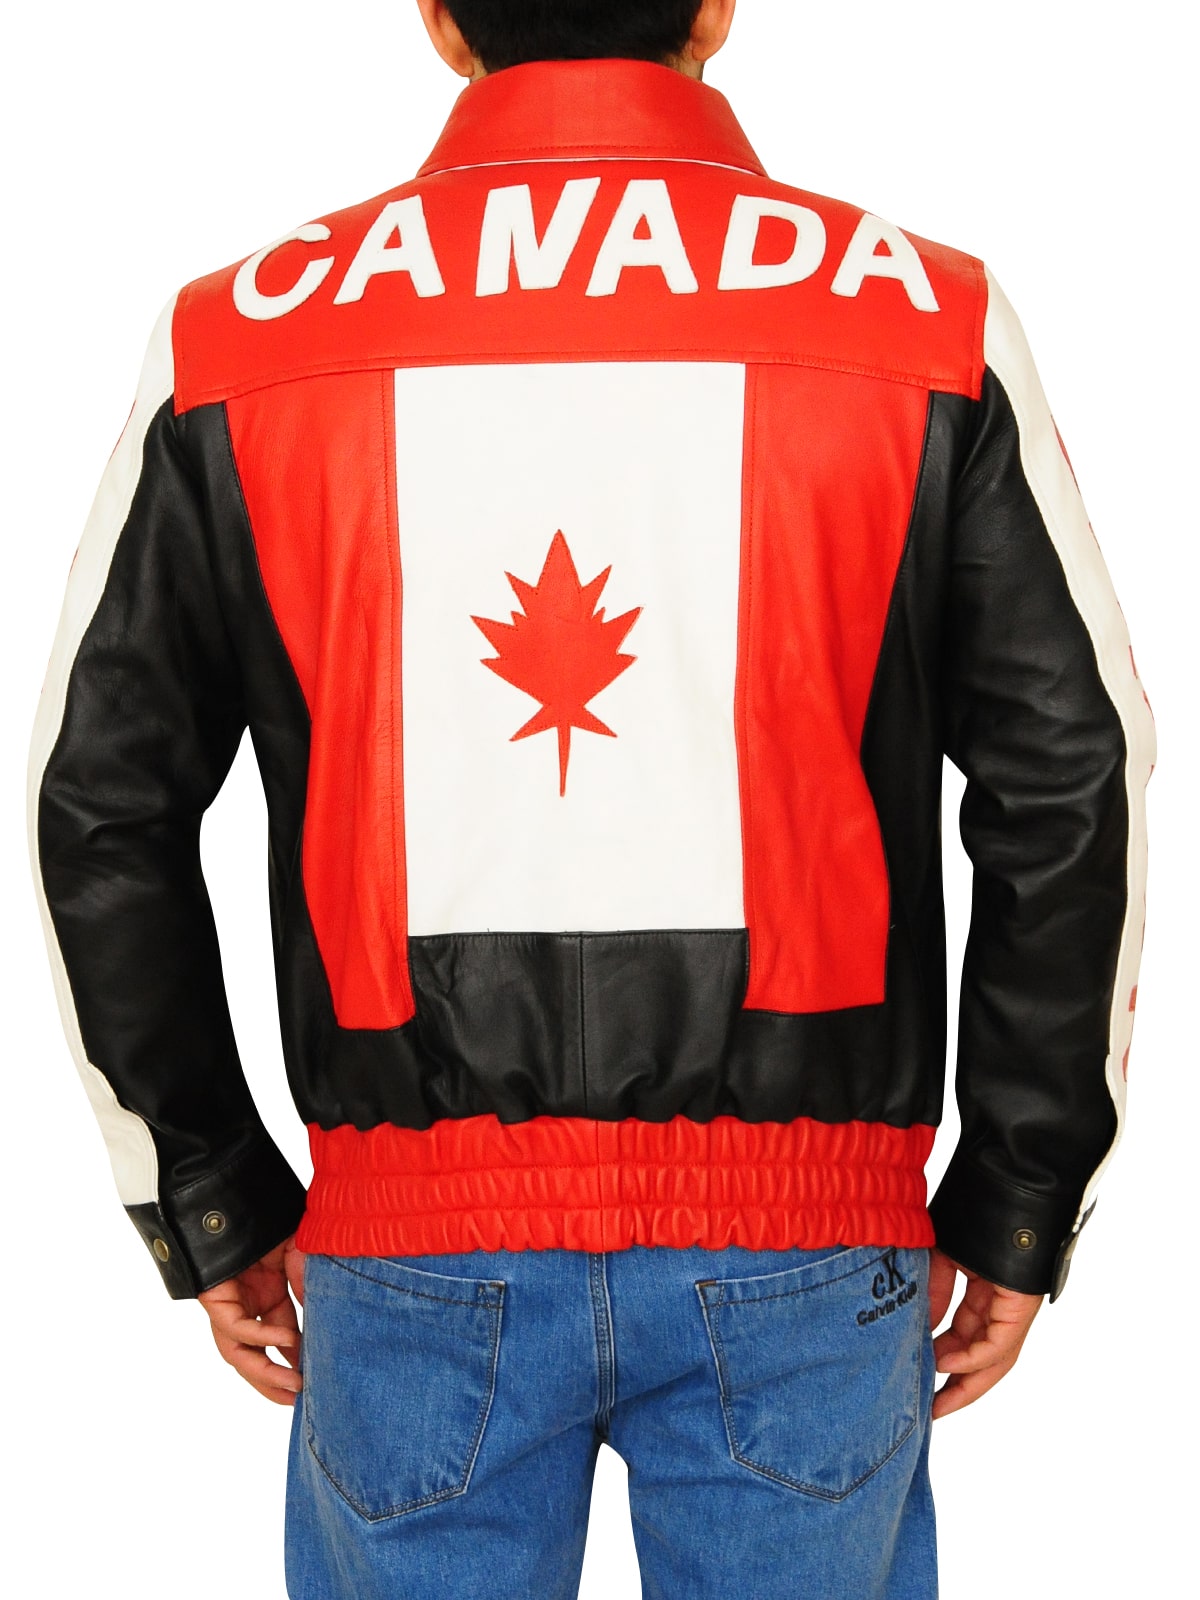 Canada Leather Jacket